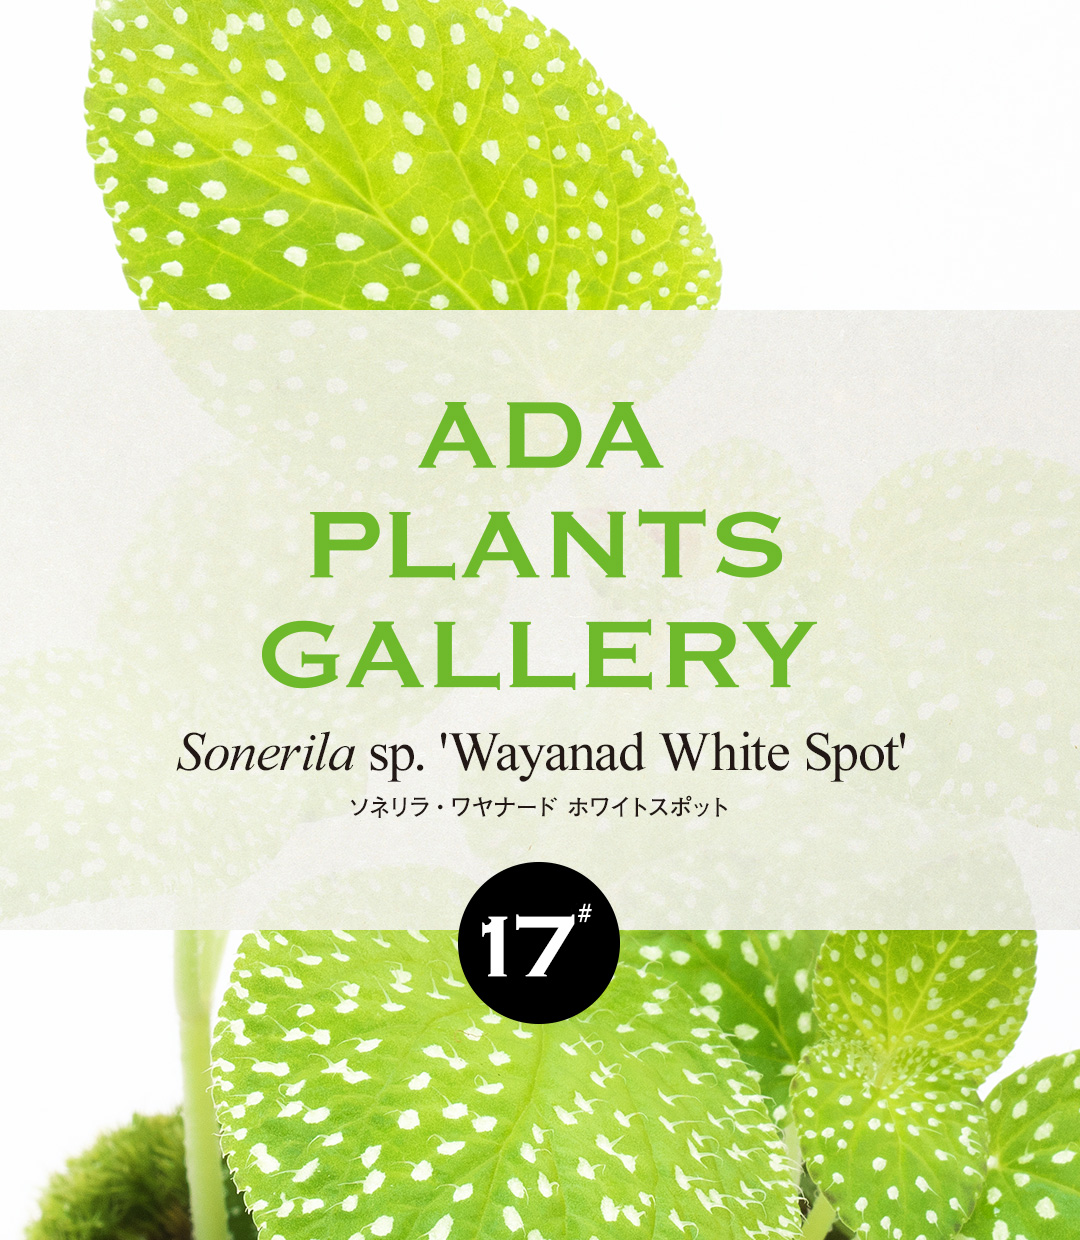 ADA PLANTS GALLERY #17 Sonerila sp. ‘Wayanad White Spot’